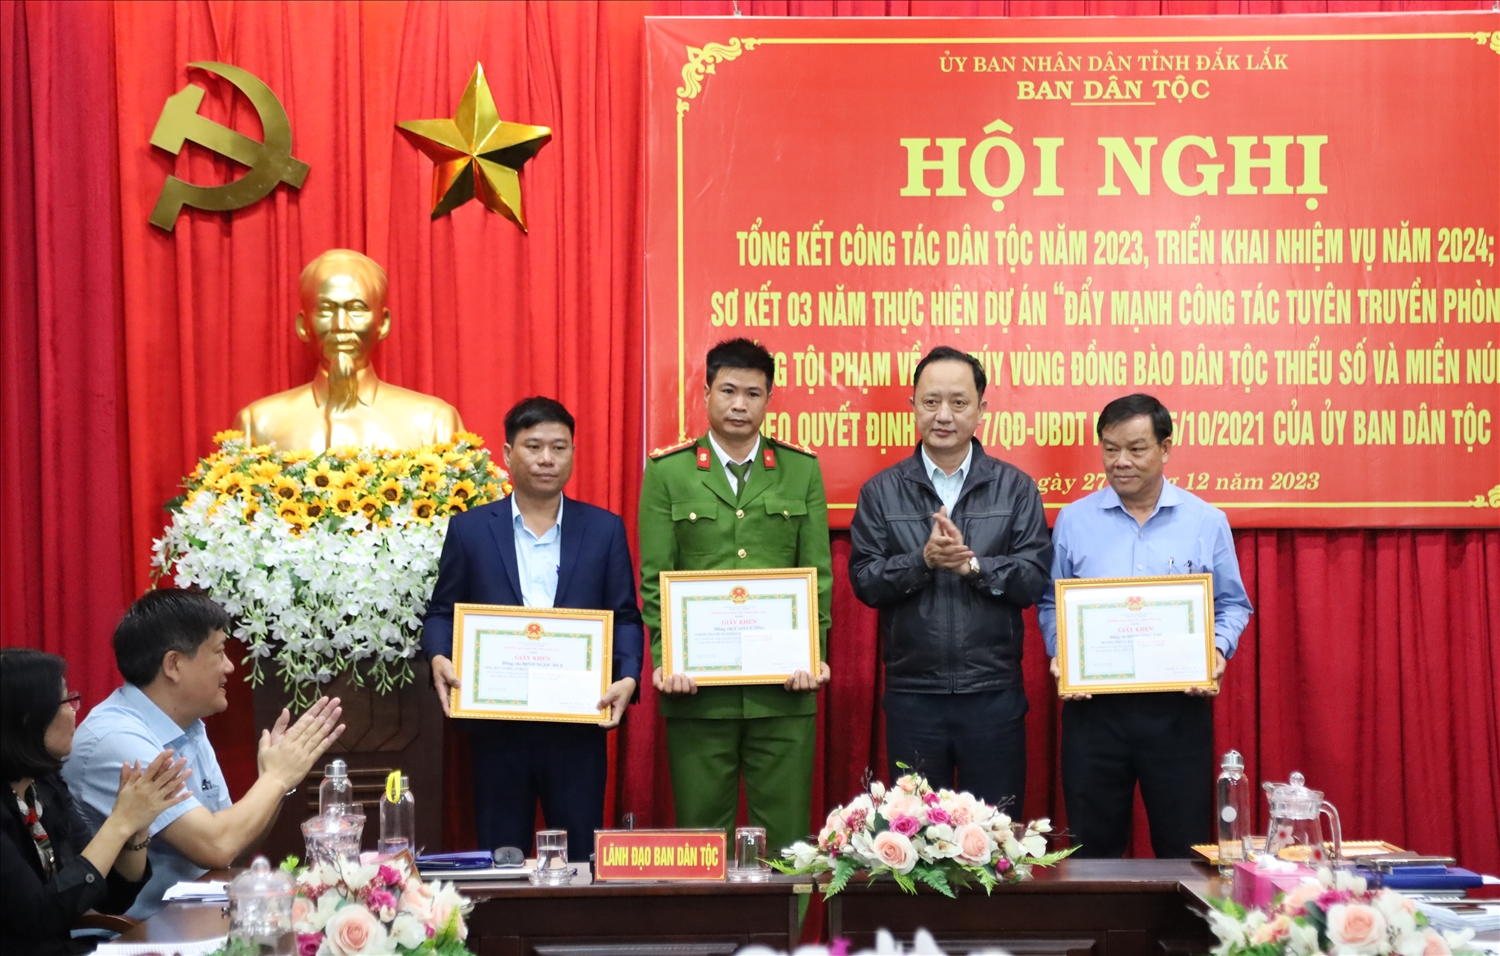 Ông Hà Huy Quang, Phó trưởng Ban Dân tộc tỉnh Đắk Lắk trao giấy khen cho các cá nhân